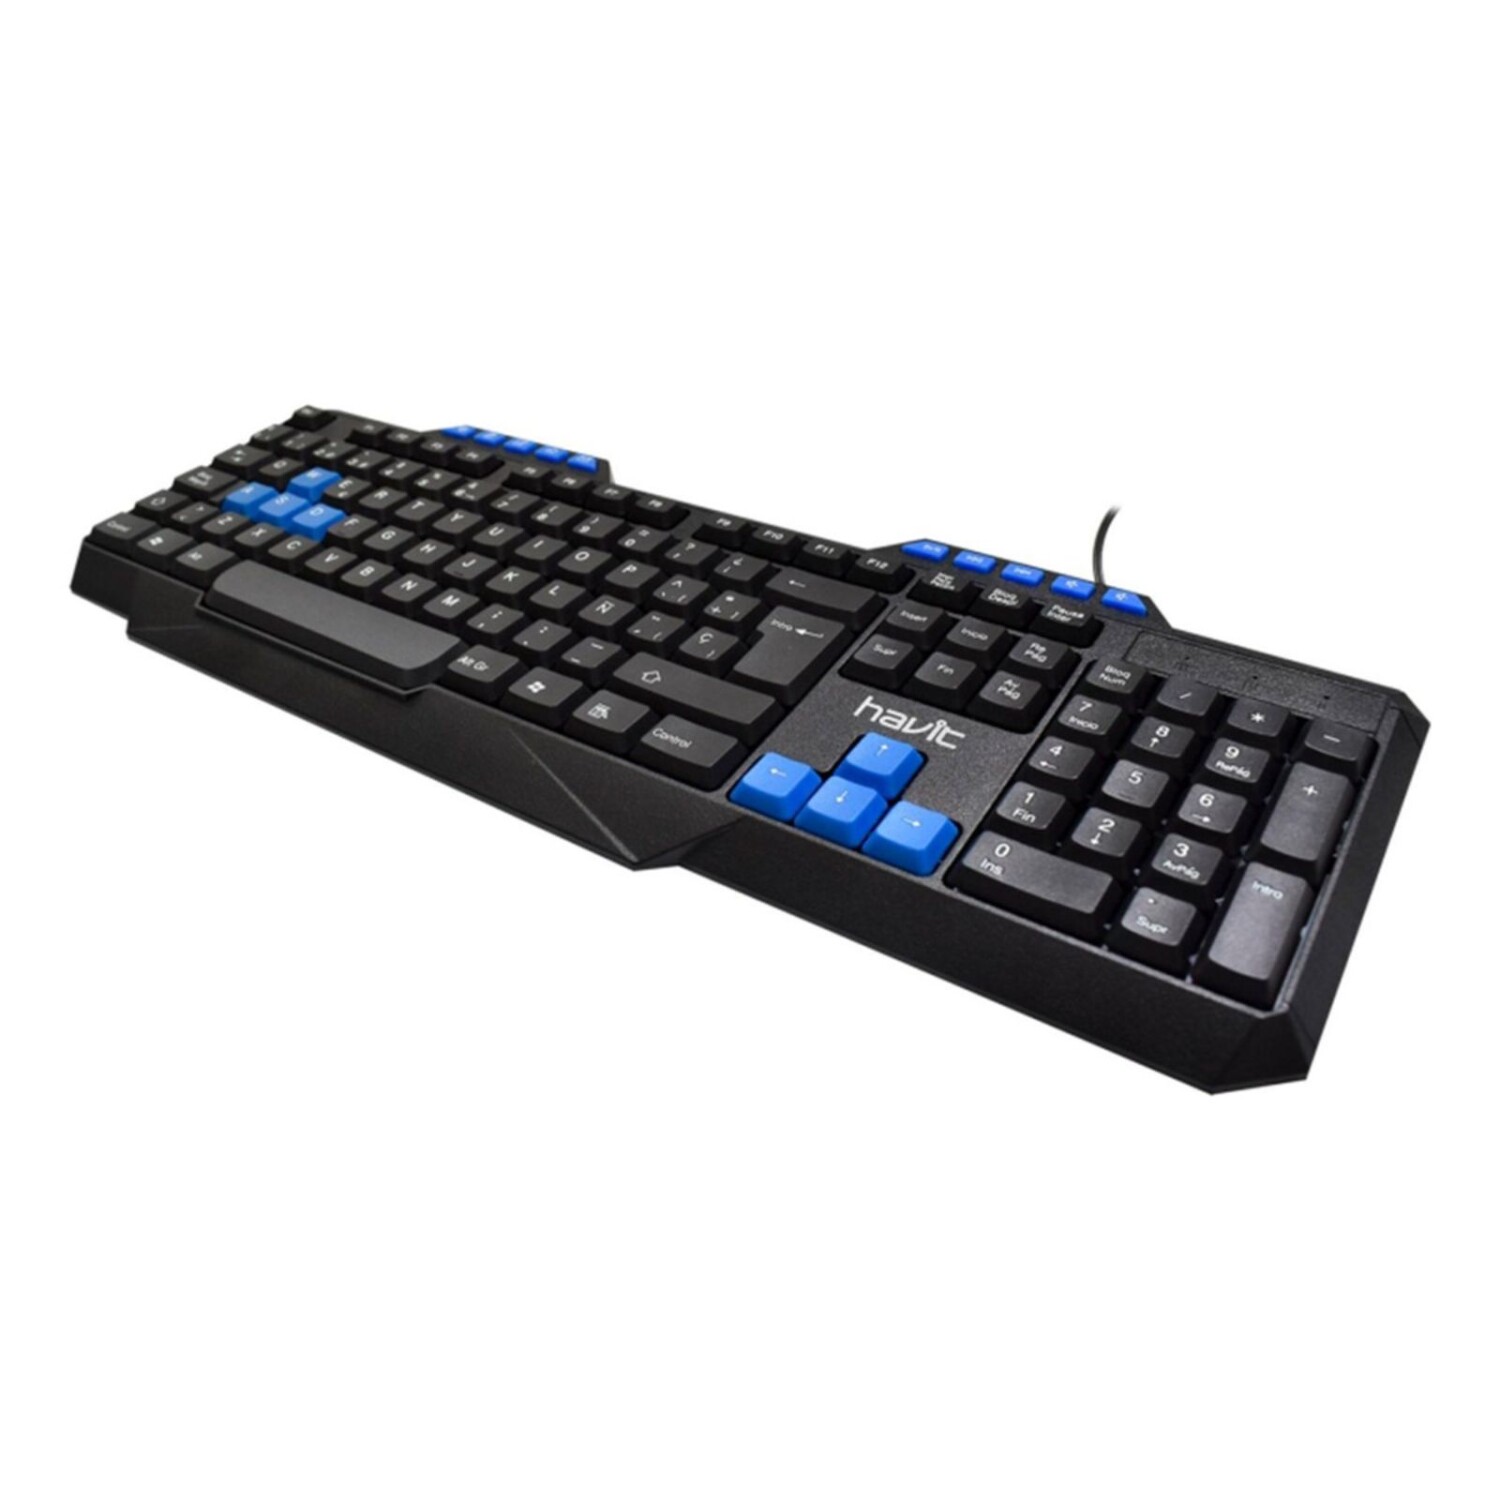 Teclado mecánico Havit, teclado compacto con cable para PC con